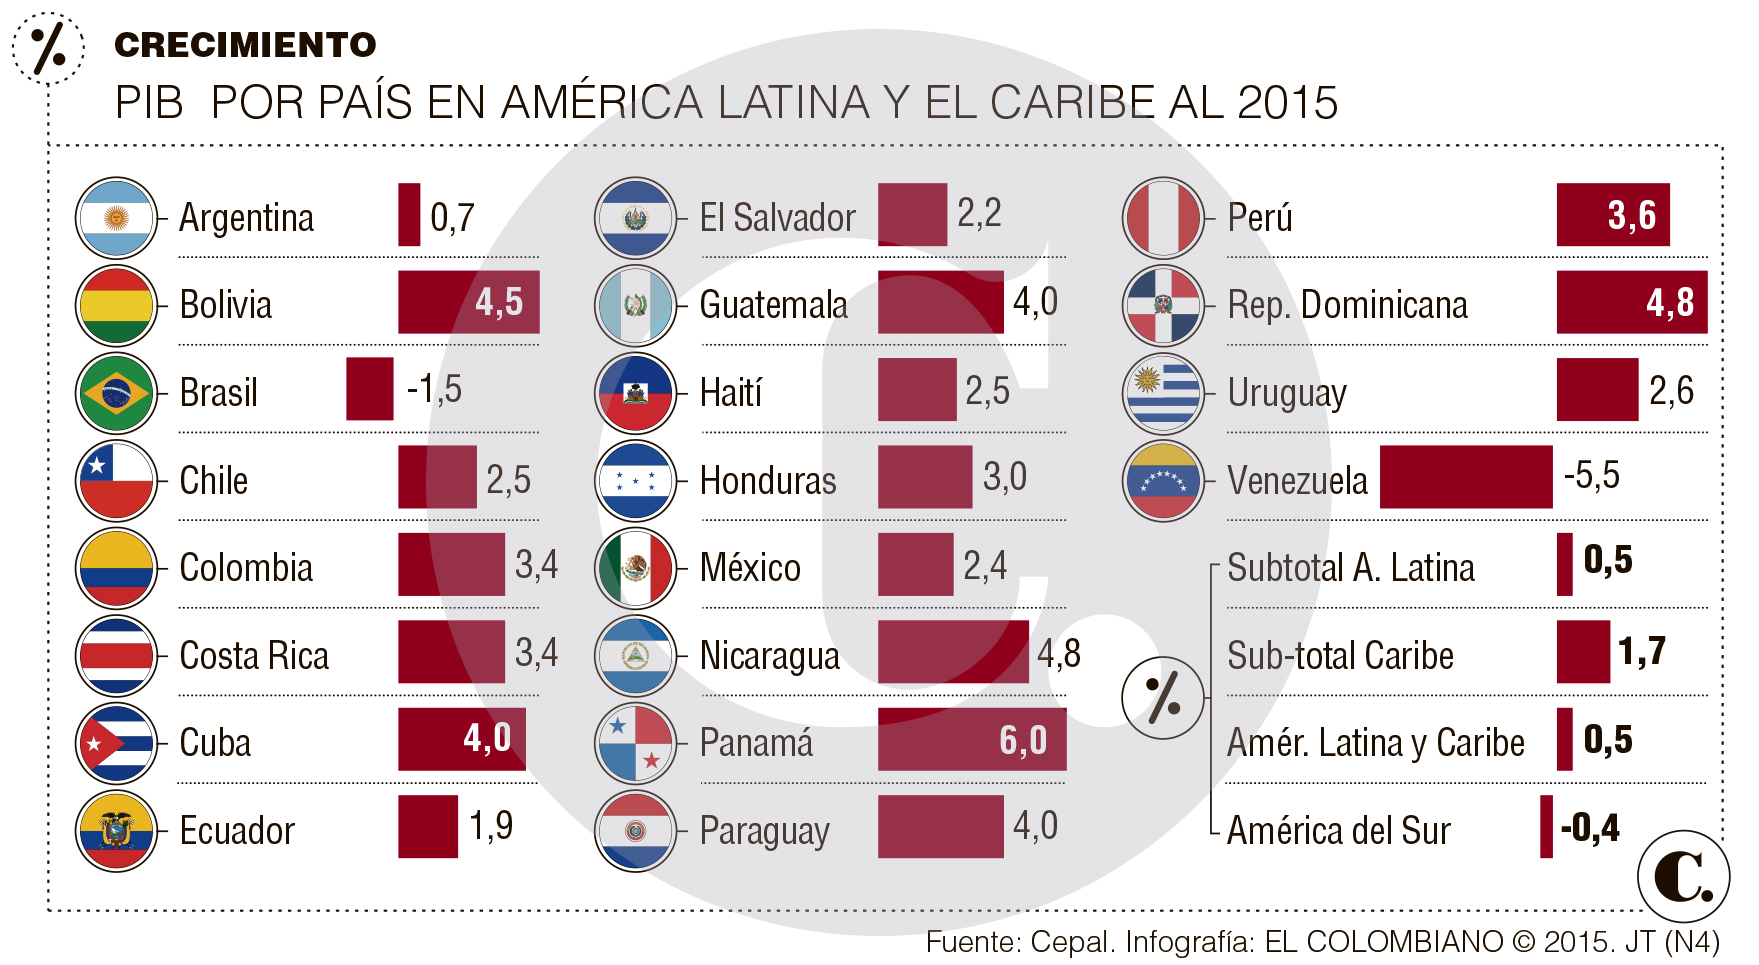 La economía colombiana crecerá 3,4% en 2015: Cepal